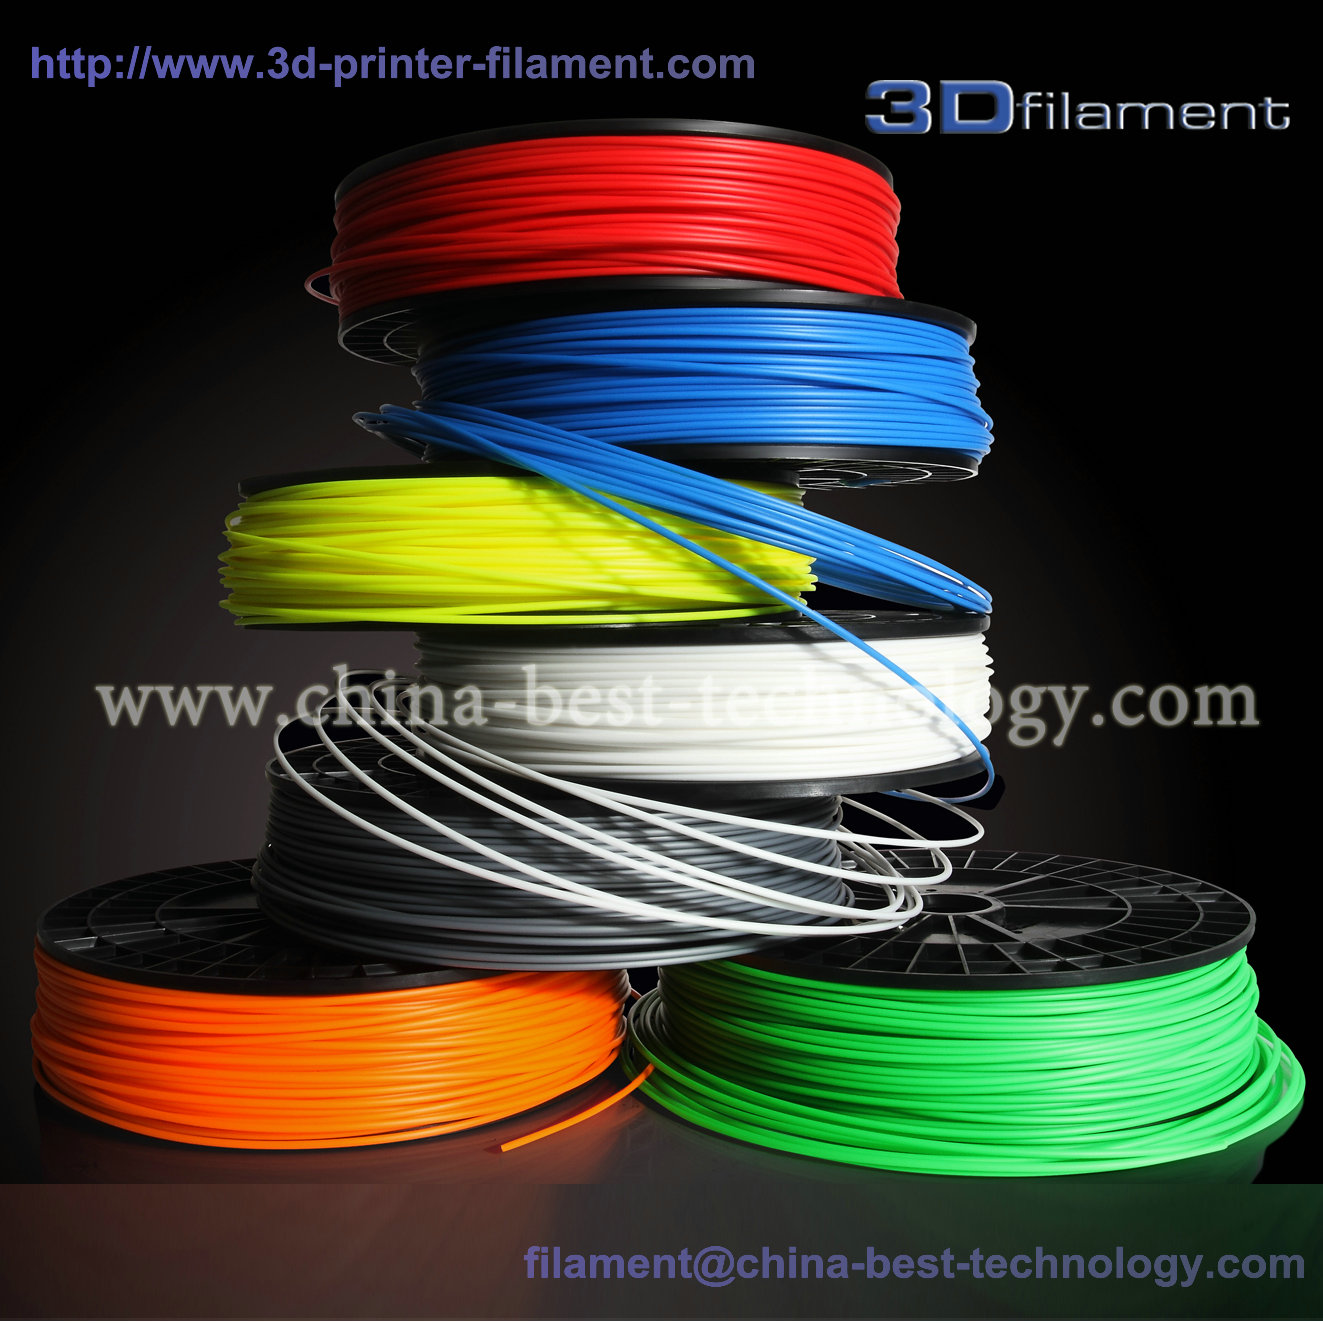 Best 3D Printer Filament wholesale